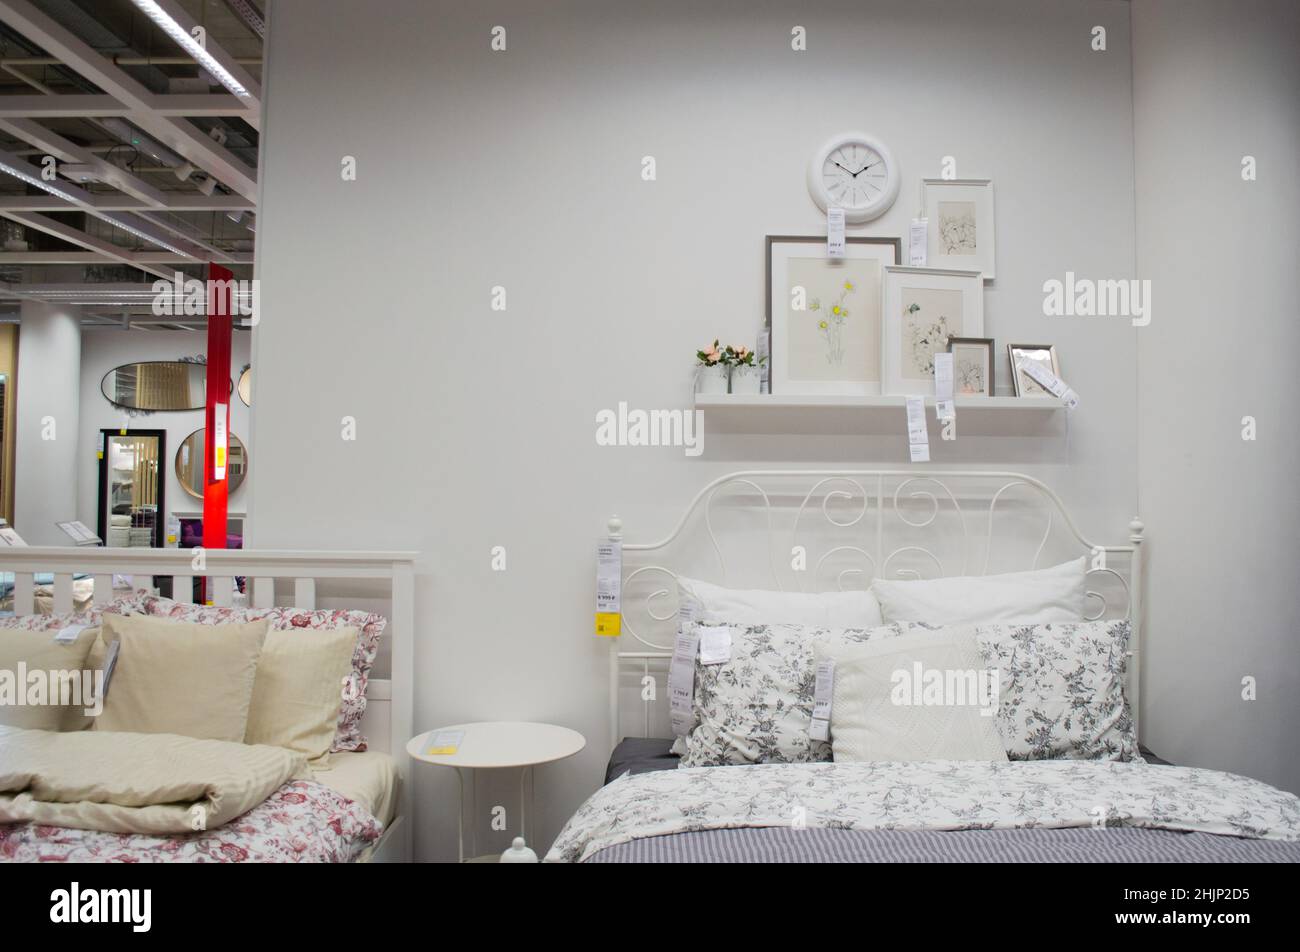 Moscú, Rusia, septiembre de 2019: Interior del dormitorio de la tienda IKEA: Cama de color blanco, de cama, marcos de fotos y reloj de pared. Tienda muebles Fotografía stock -